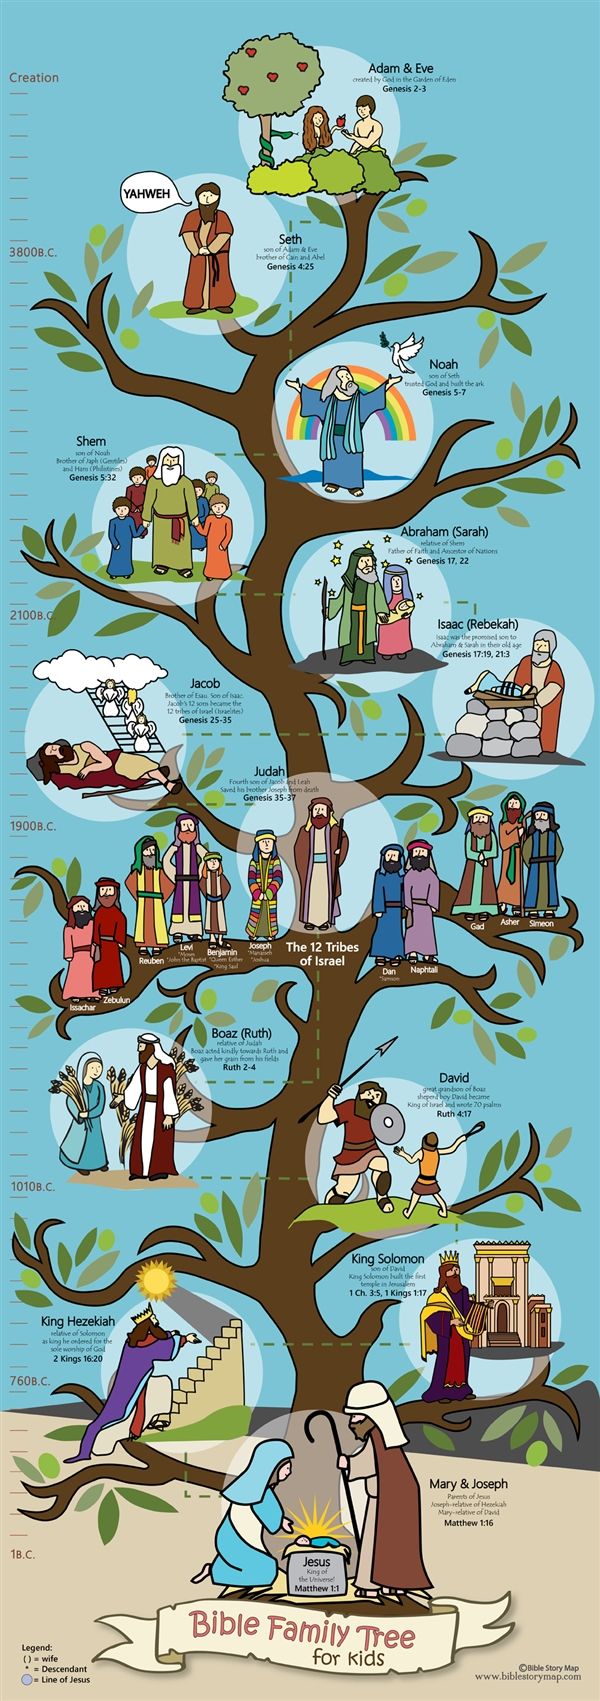 arbol genealogico de jesus de nazaret para niños